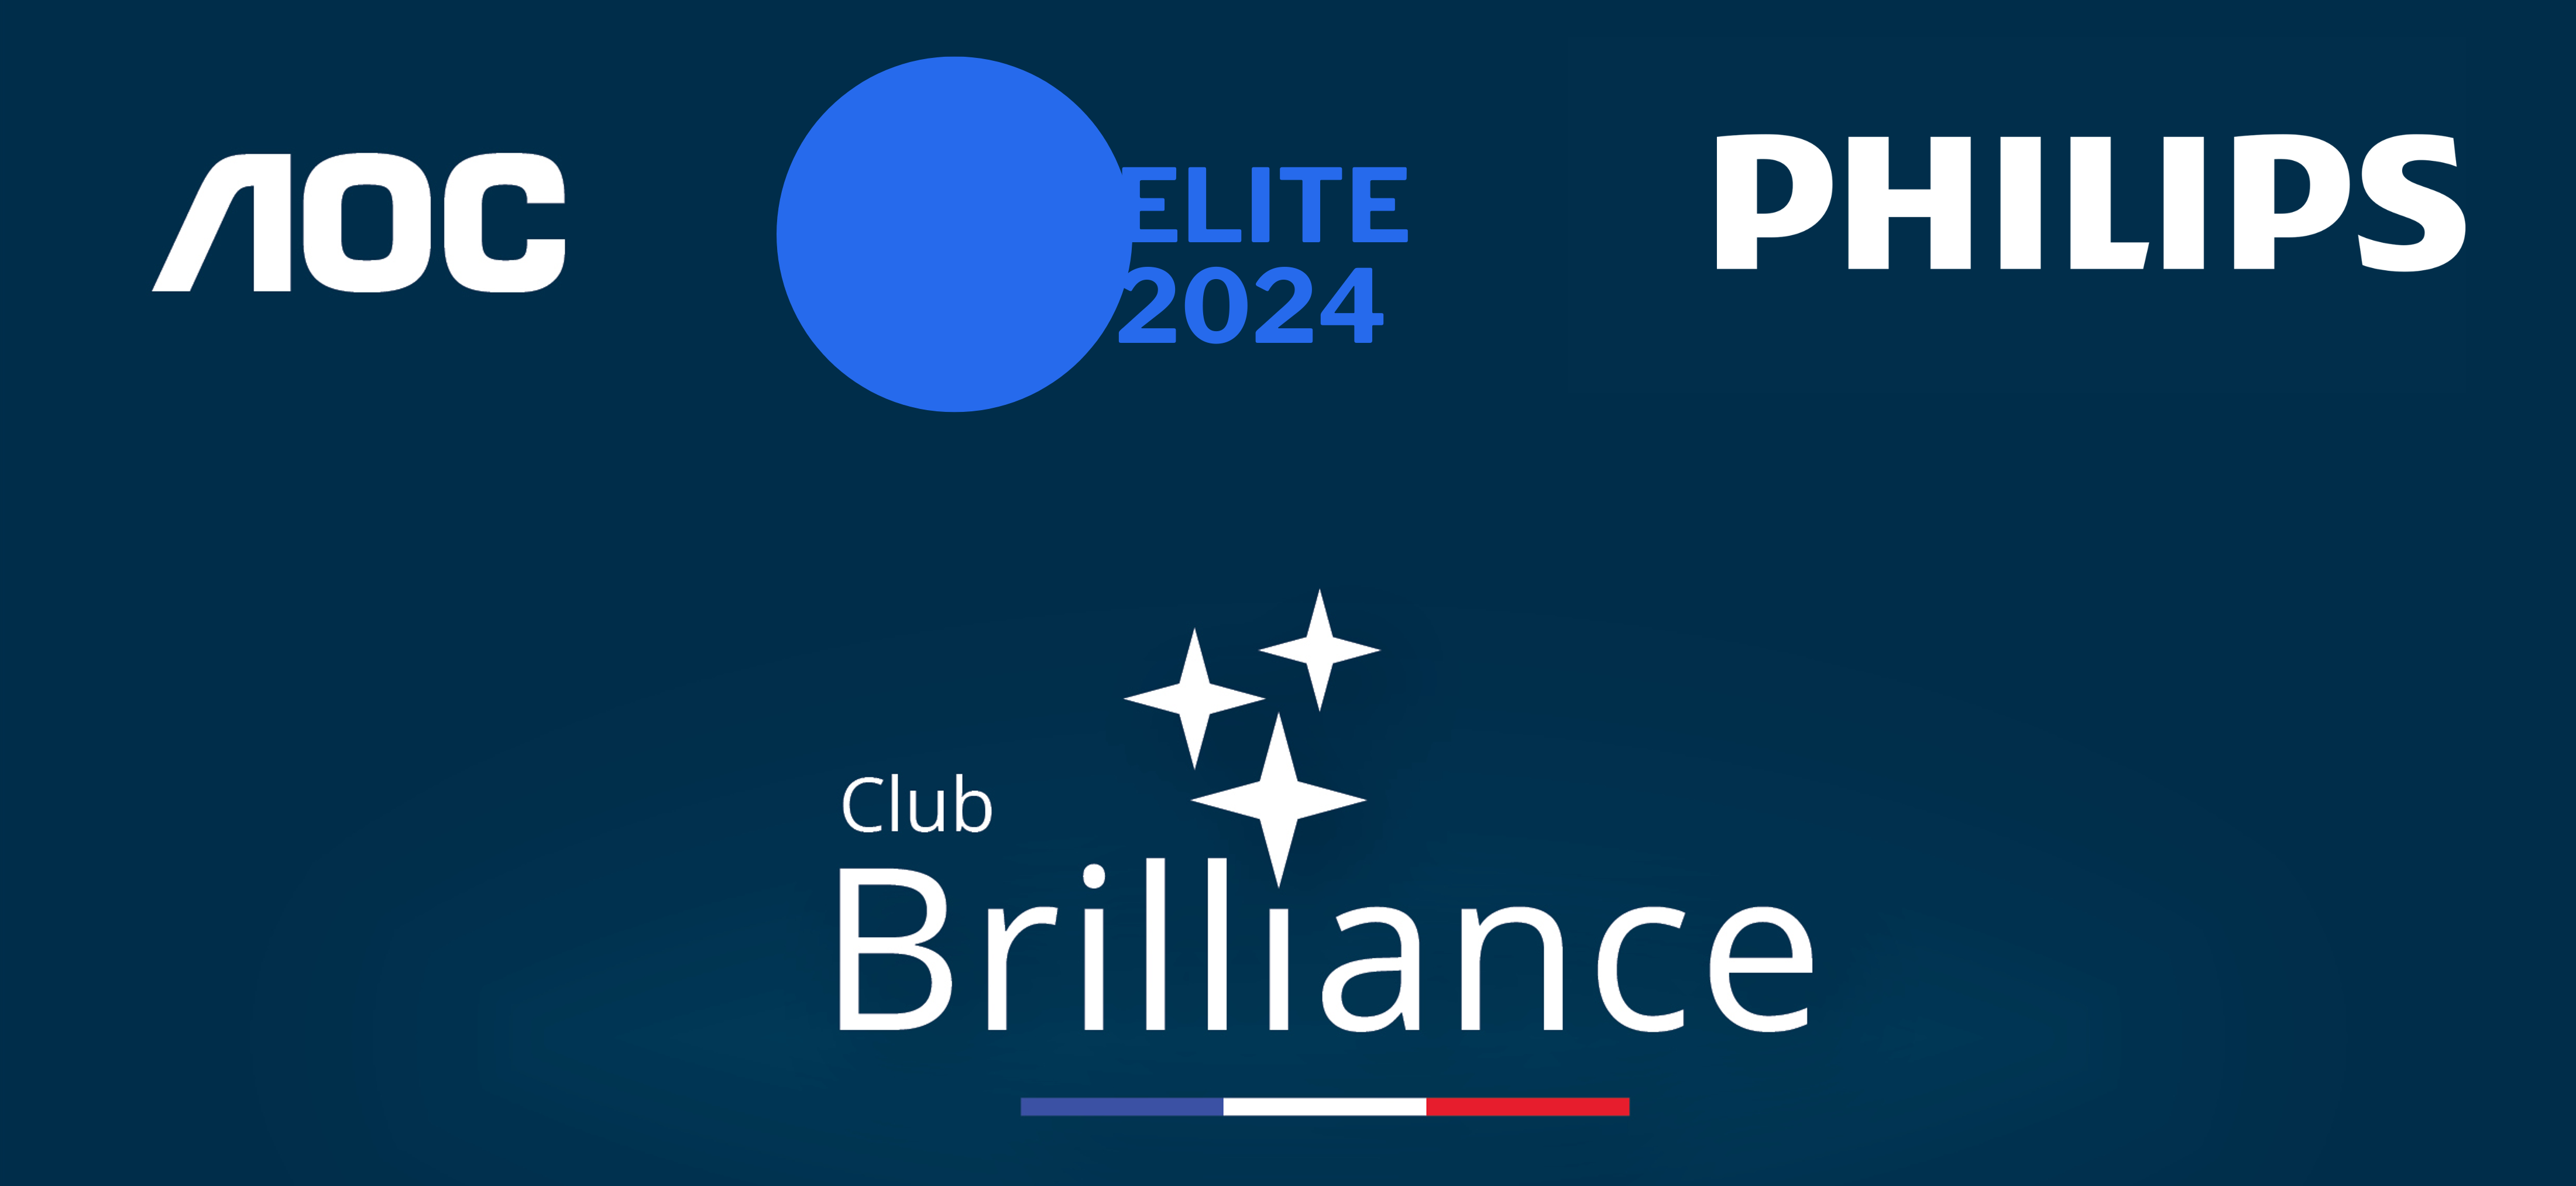 IBS est partenaire ELITE 2024 du Club Brillance avec AOC et PHILIPS